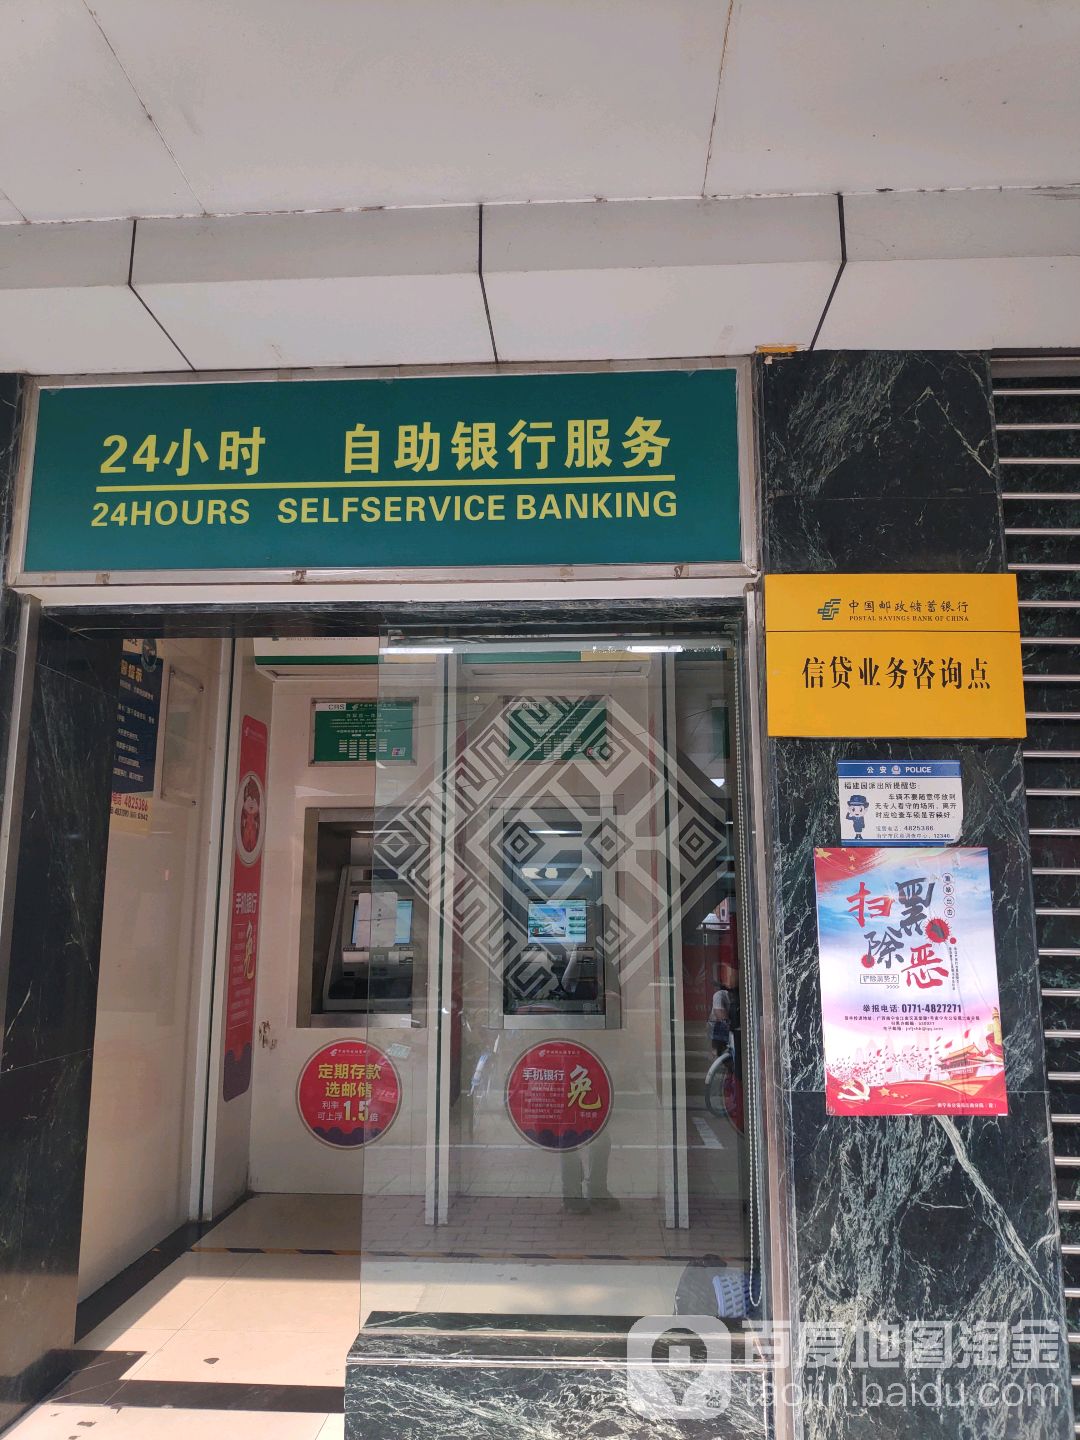 中國郵政儲蓄銀行24小時自助銀行服務(星光大道南營業部)